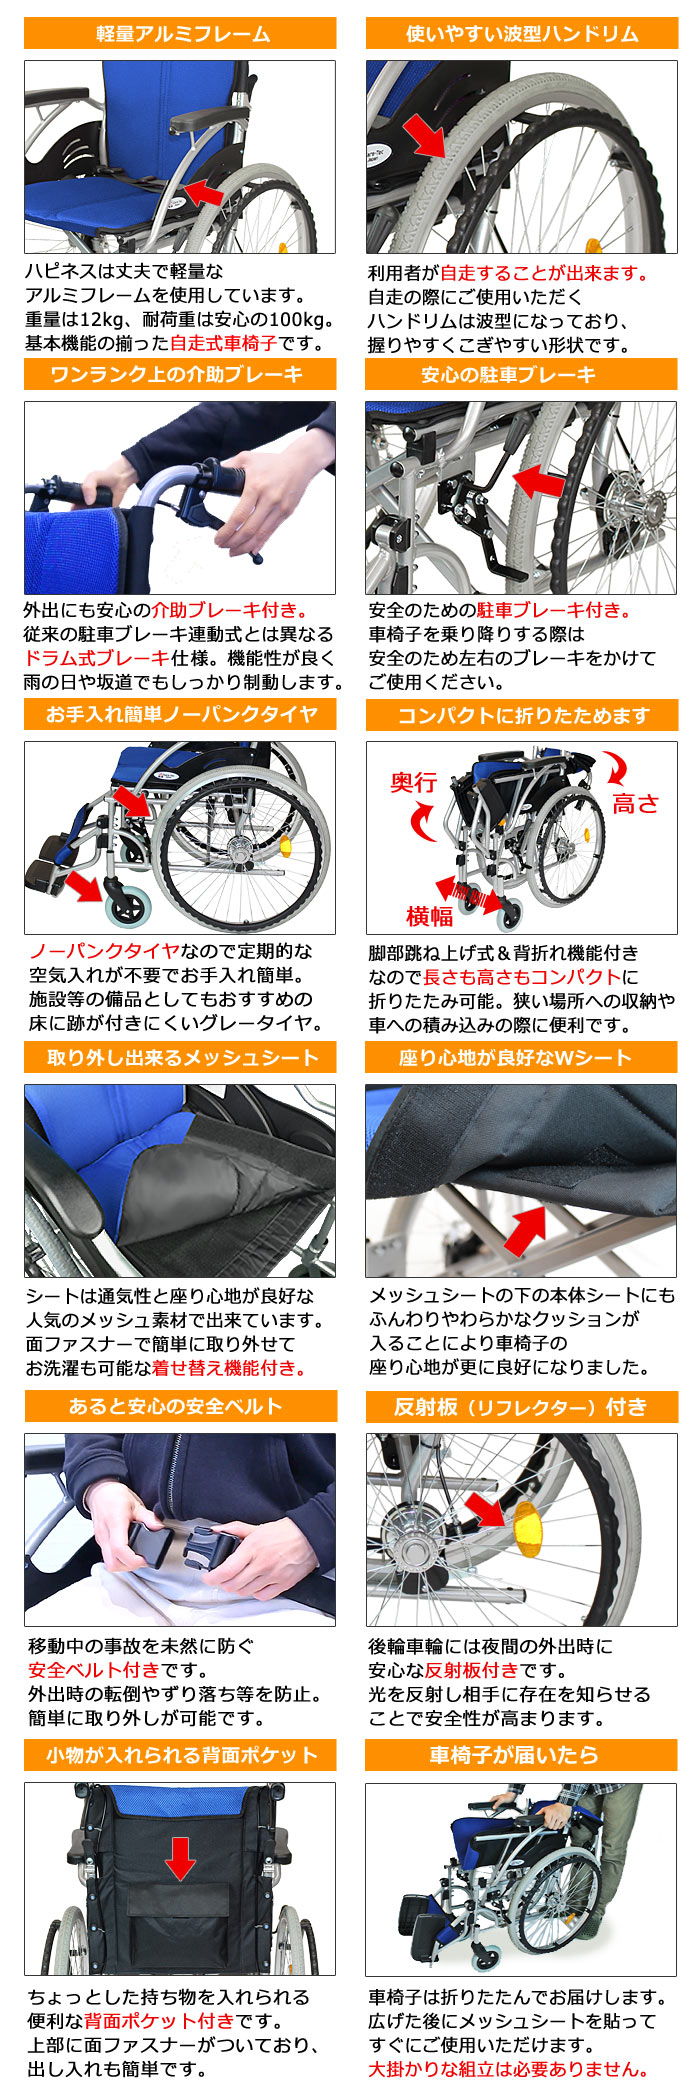 【ケアテックジャパン】 自走式車椅子 ハピネス CA-10SU 画像3